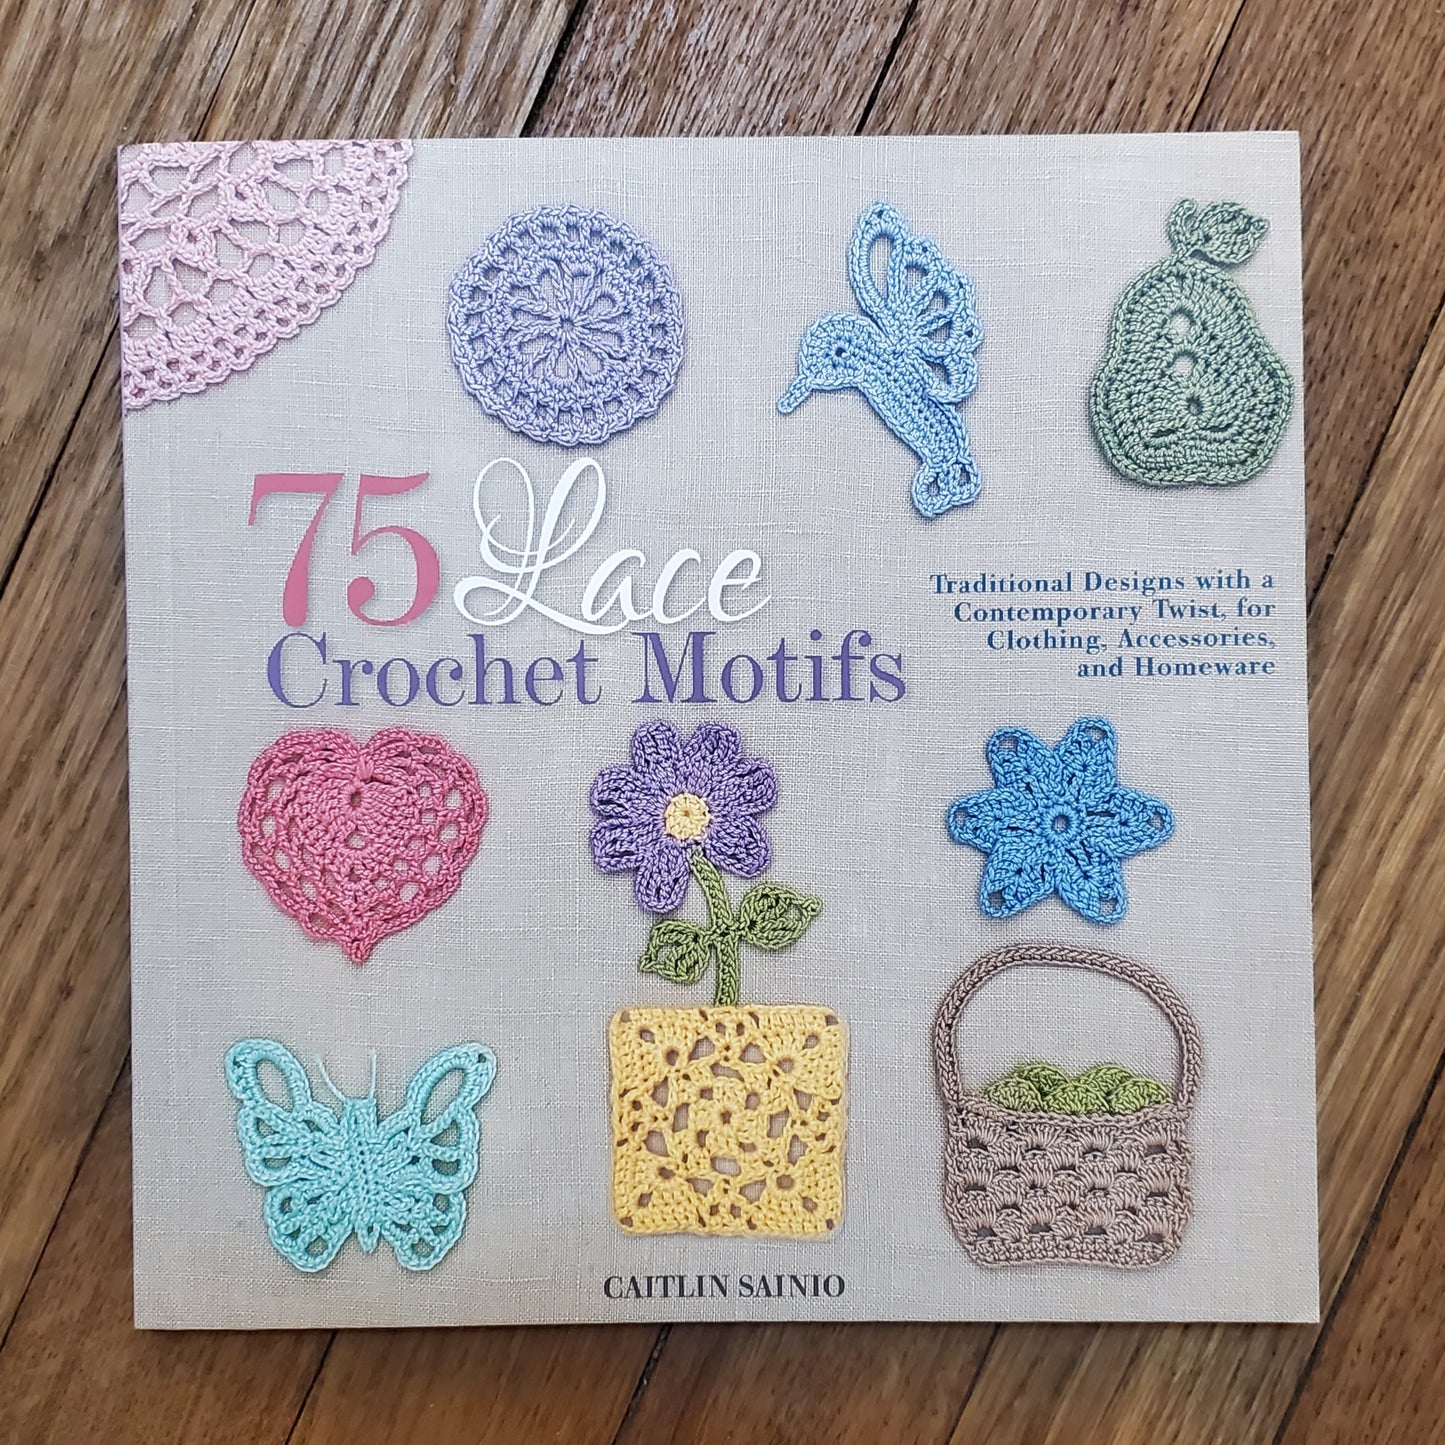 GB 75 Lace Crochet Motifs